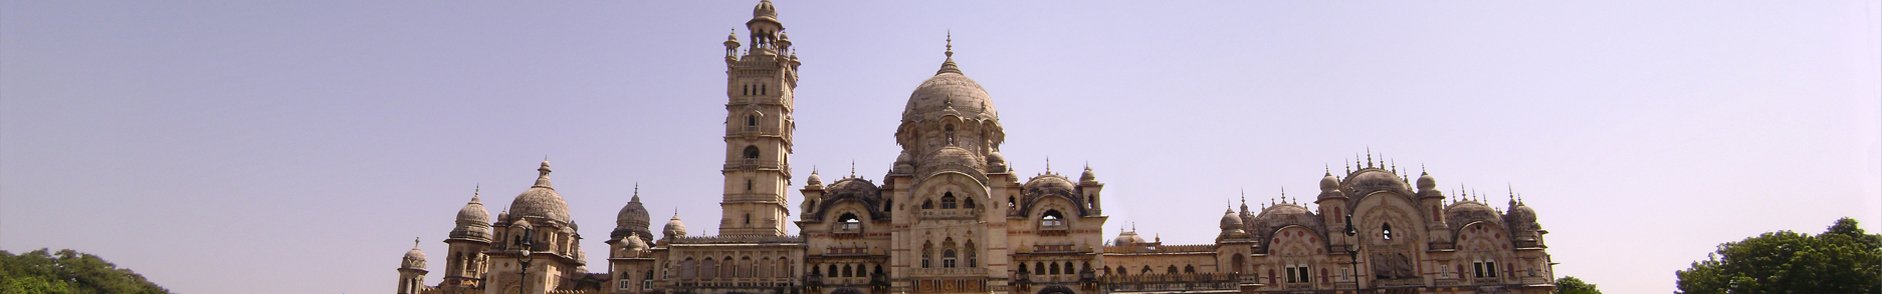 Royal Palaces in Gujarat